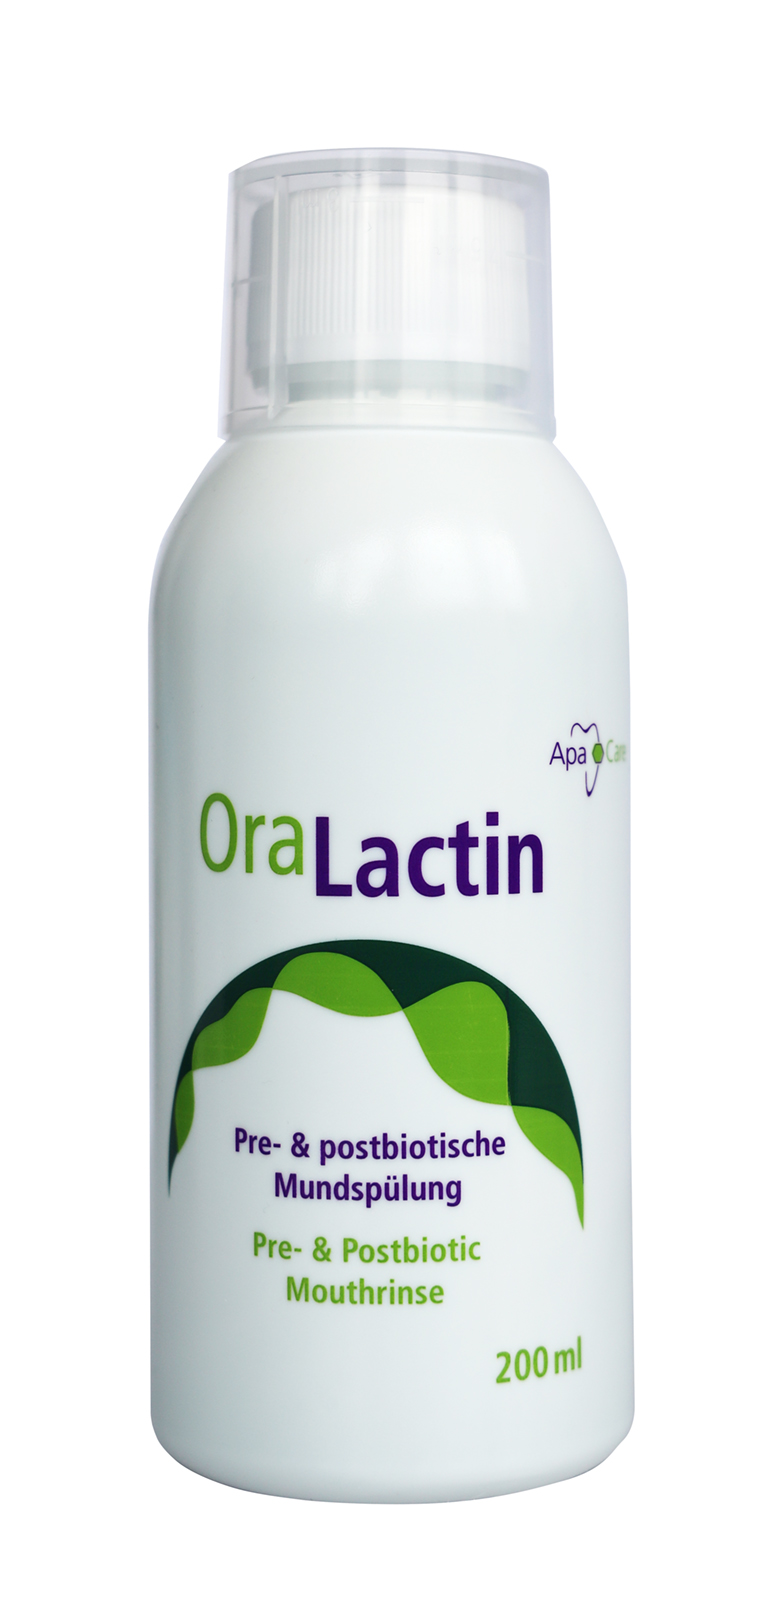 OraLactin Pre- und postbiotische Mundspülung